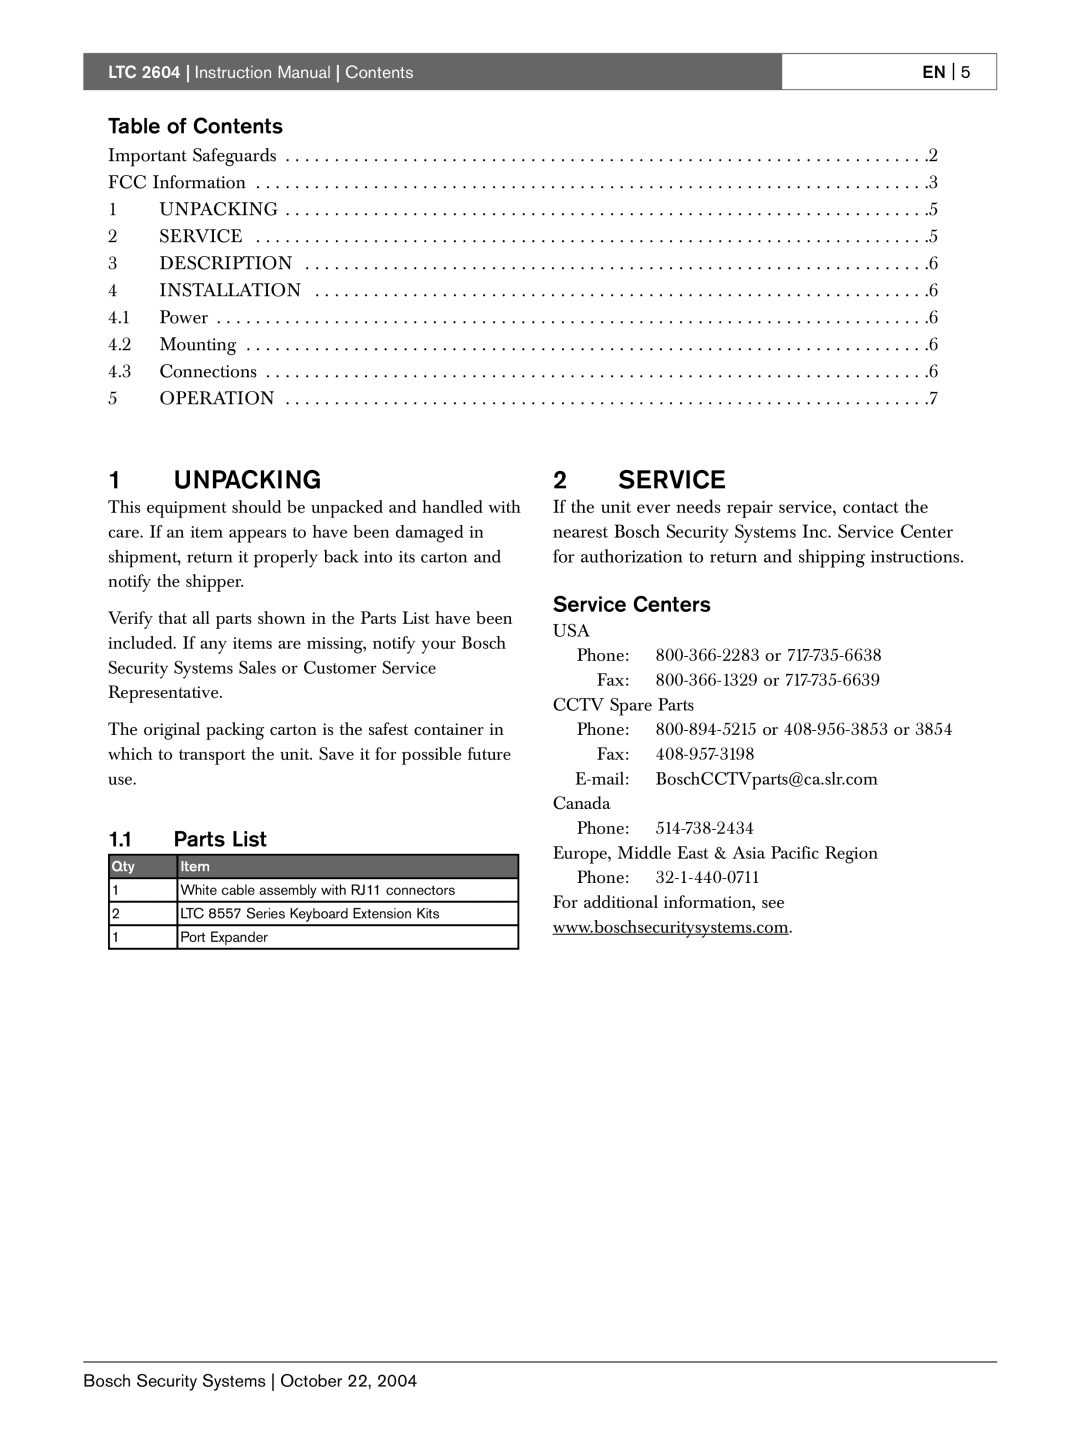 Bosch Appliances LTC 2604 instruction manual Unpacking, Table of Contents, 1.1Parts List, Service Centers, En 